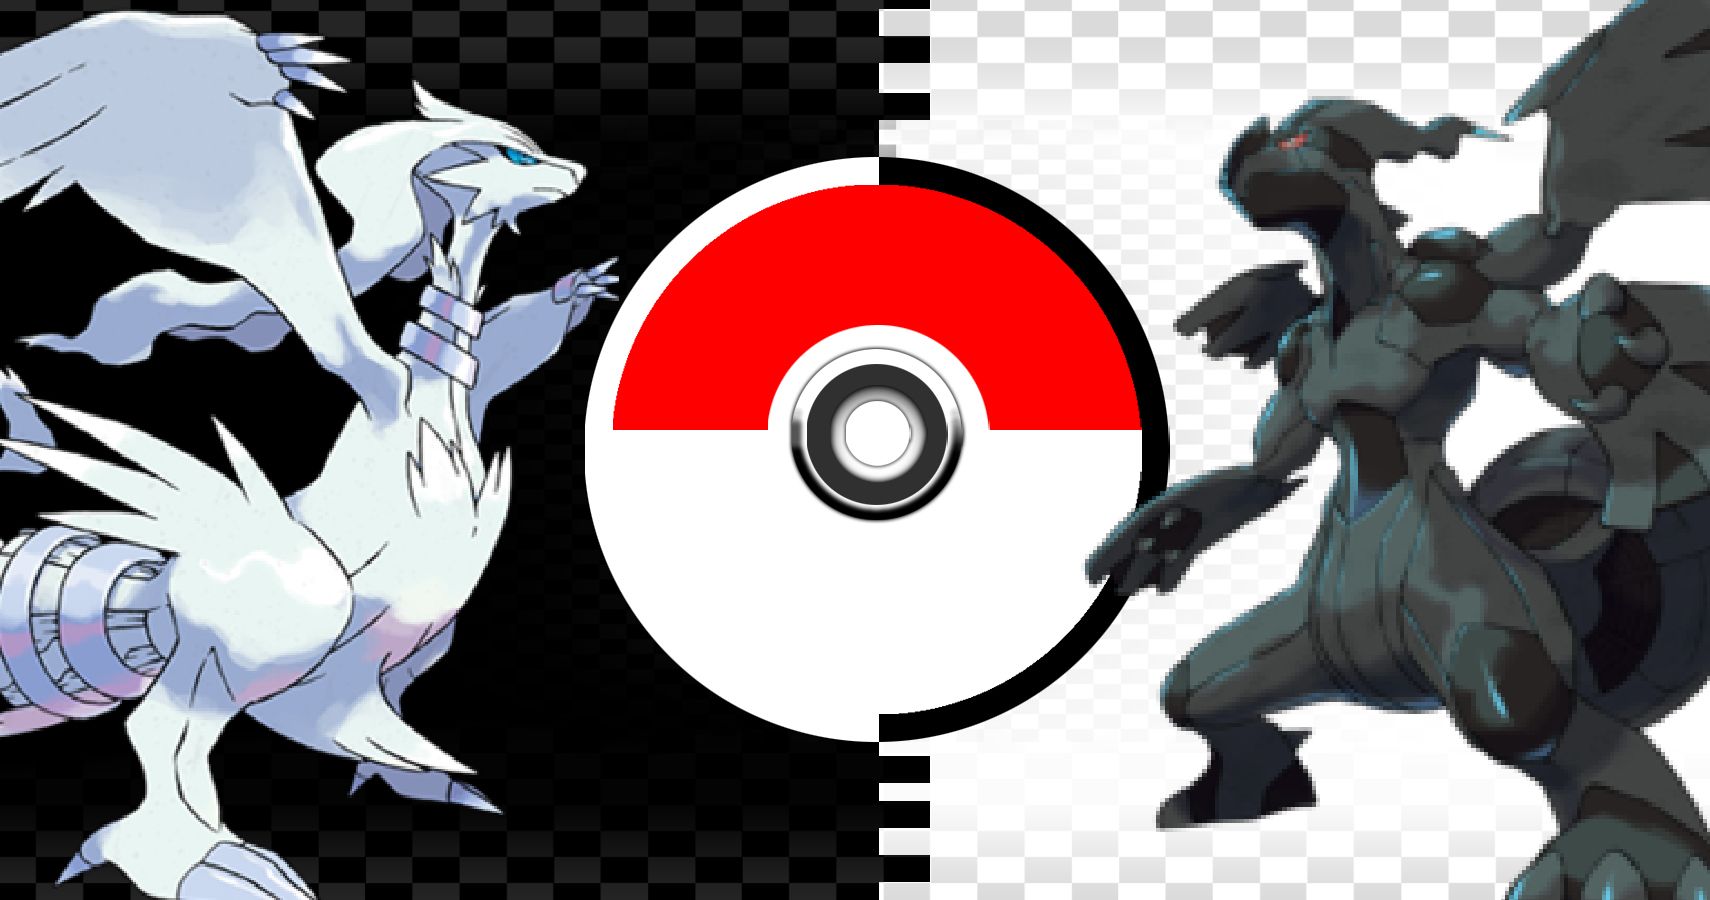 compare pokemon black 2 and white 2